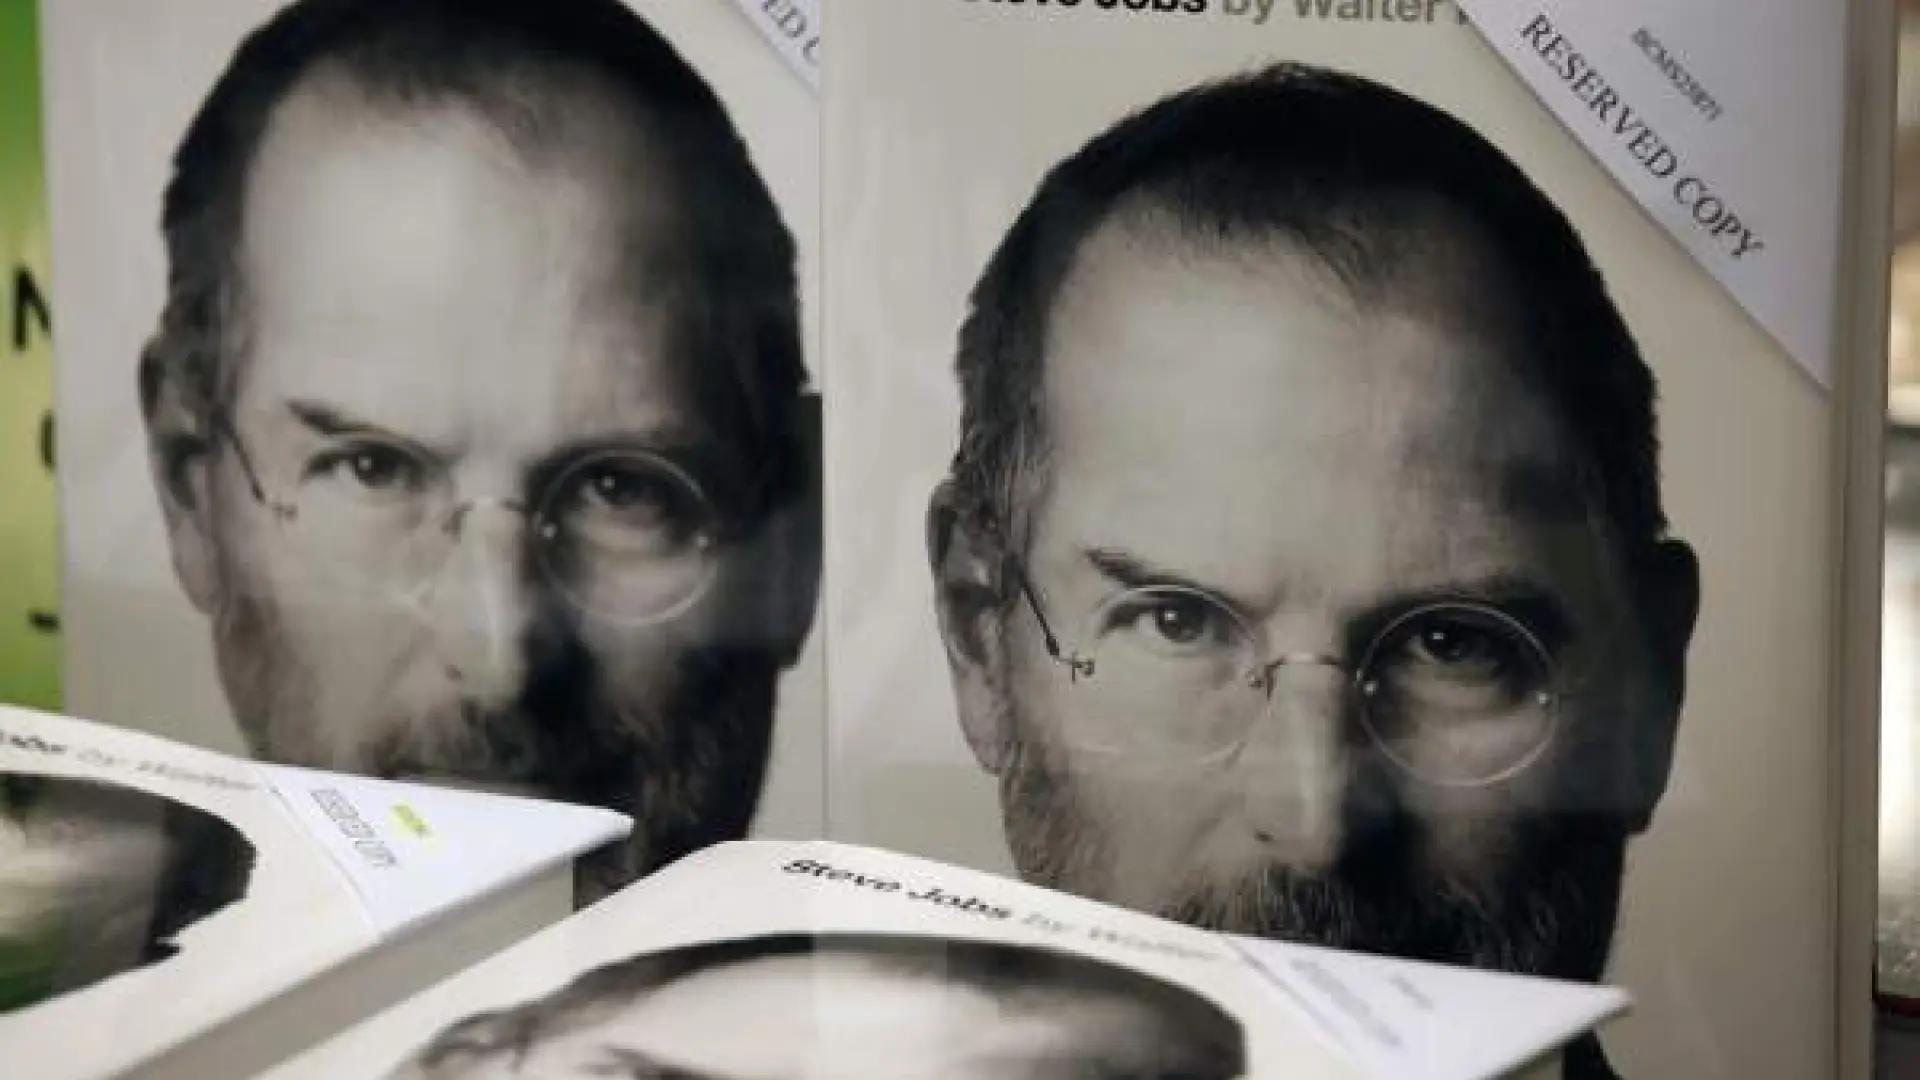 actitud inteligencia steve job - Qué le parece el comportamiento de Steve Jobs